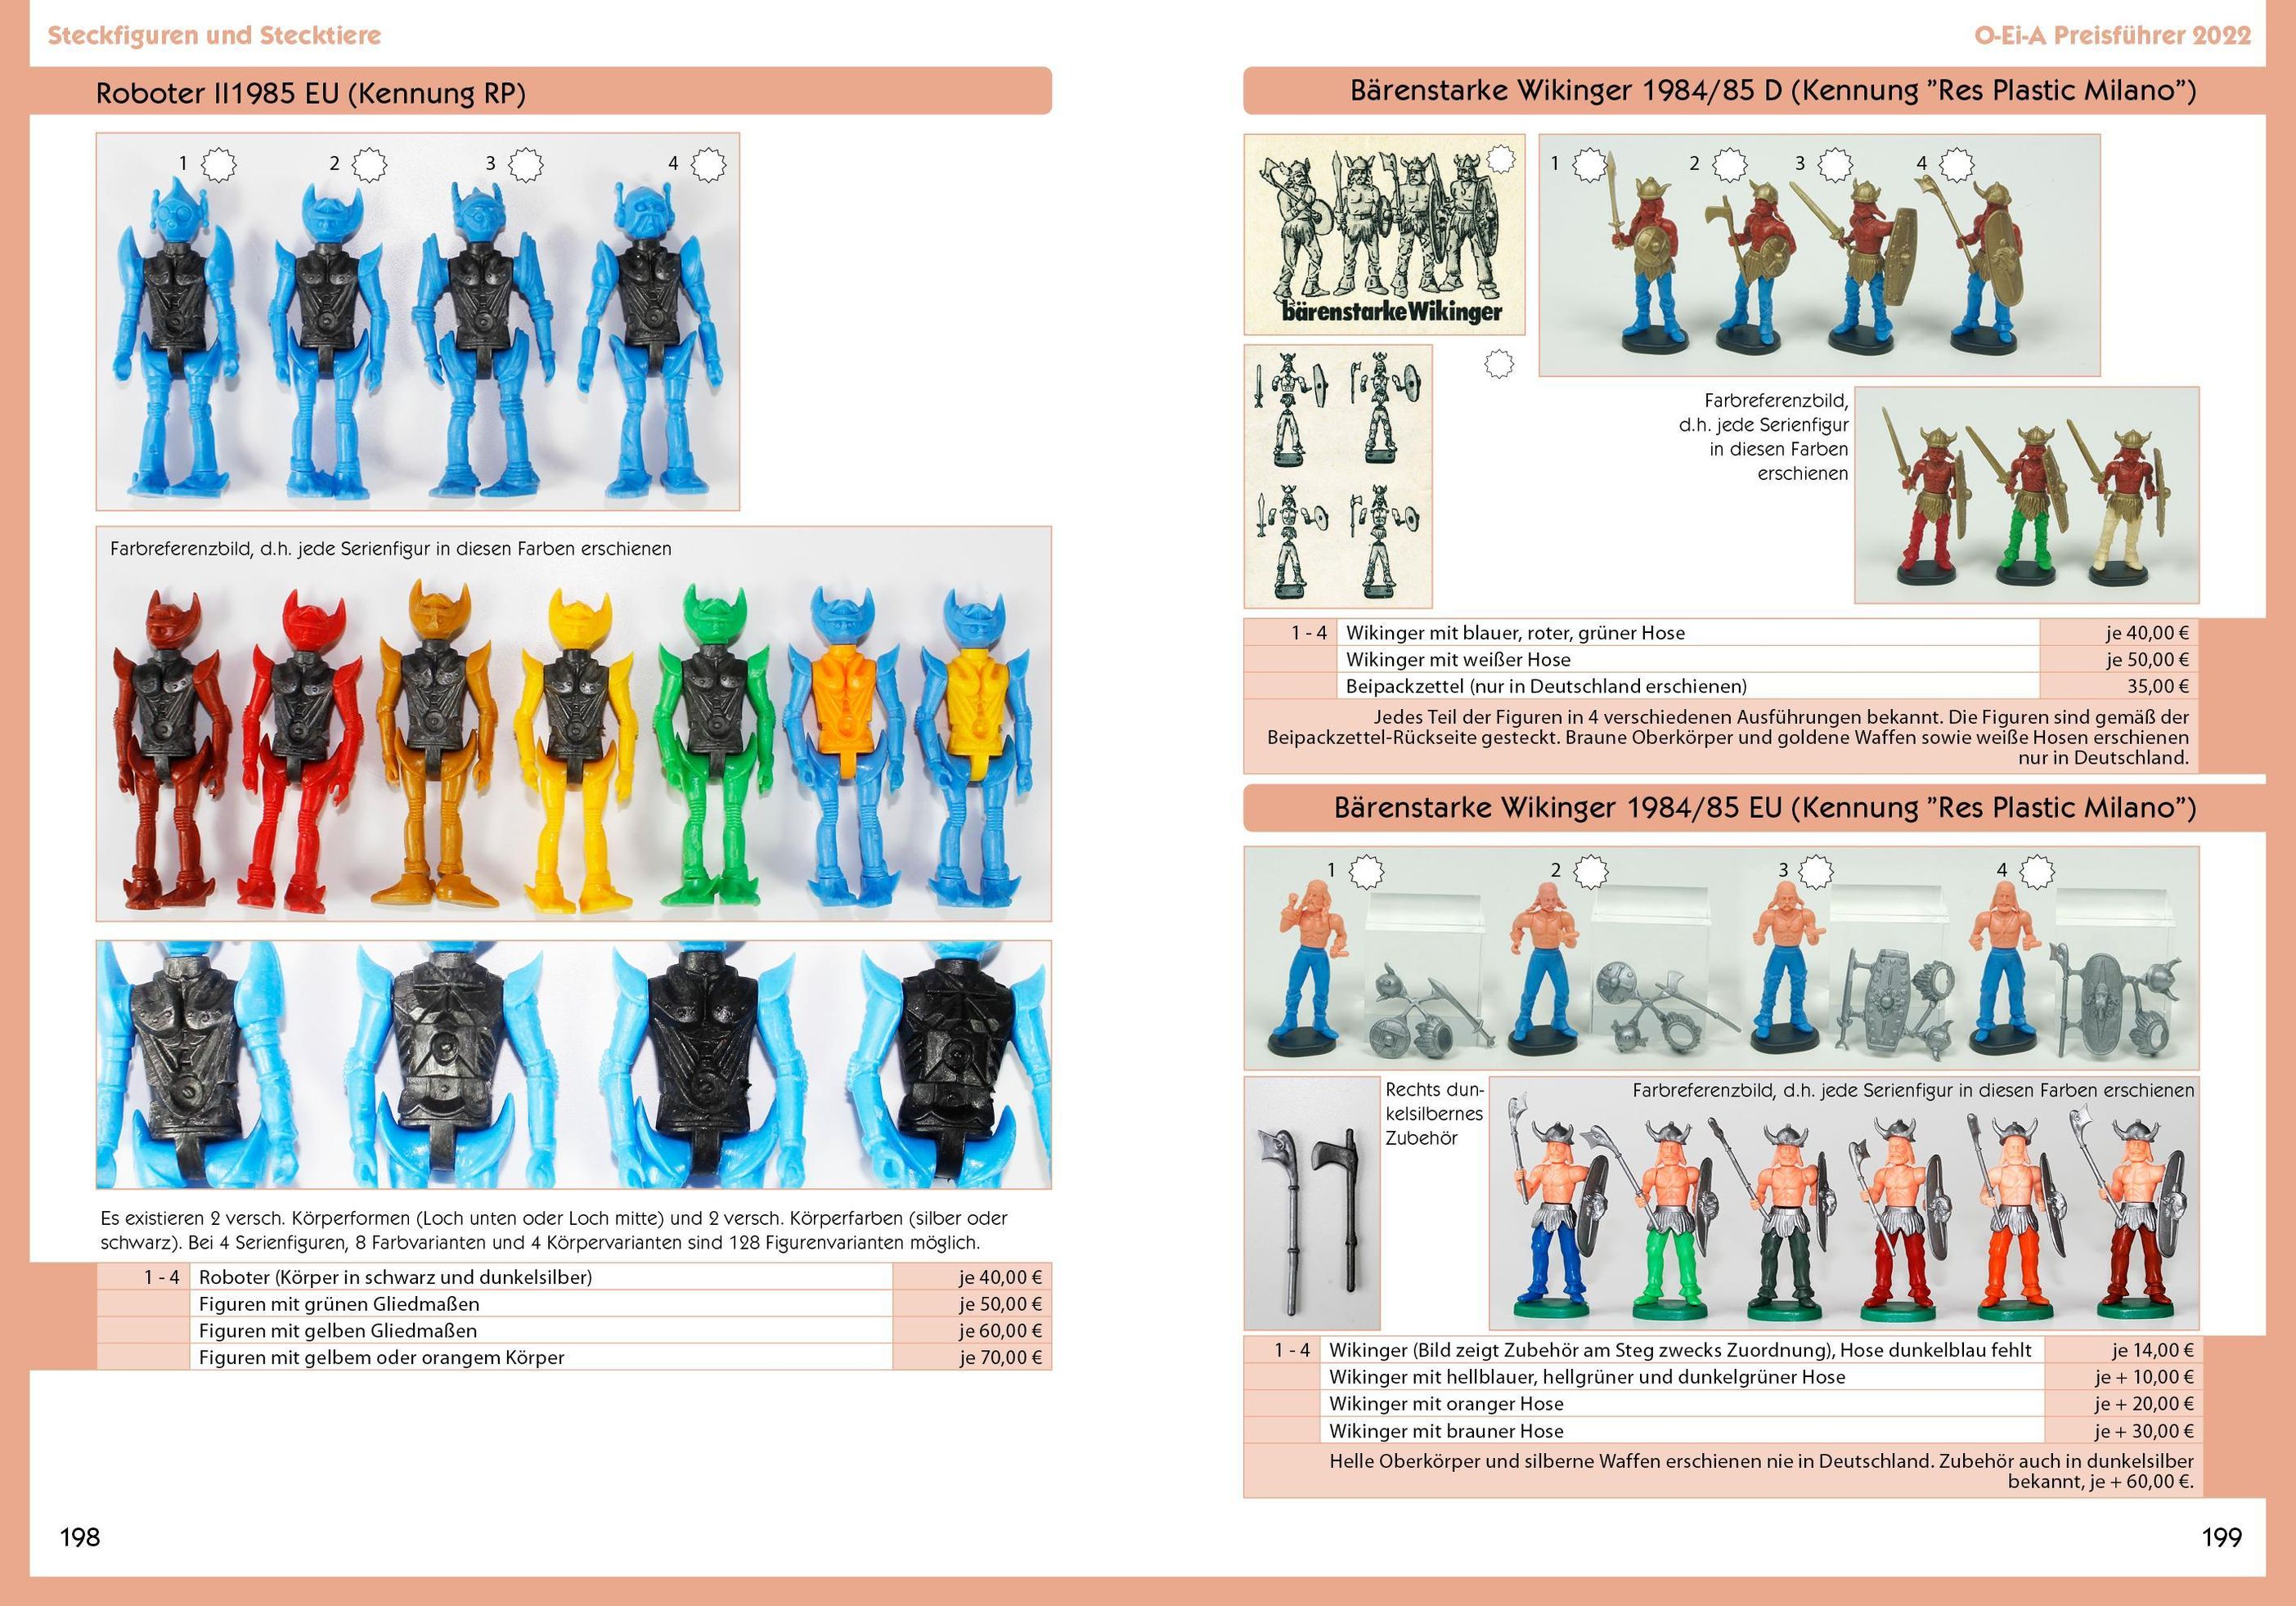 O-Ei-A 2er Bundle 2022 - O-Ei-A Figuren und O-Ei-A Spielzeug im Doppel mit  4,00 EUR Preisvorteil gegenüber Einzelkauf!, | Weltbild.ch